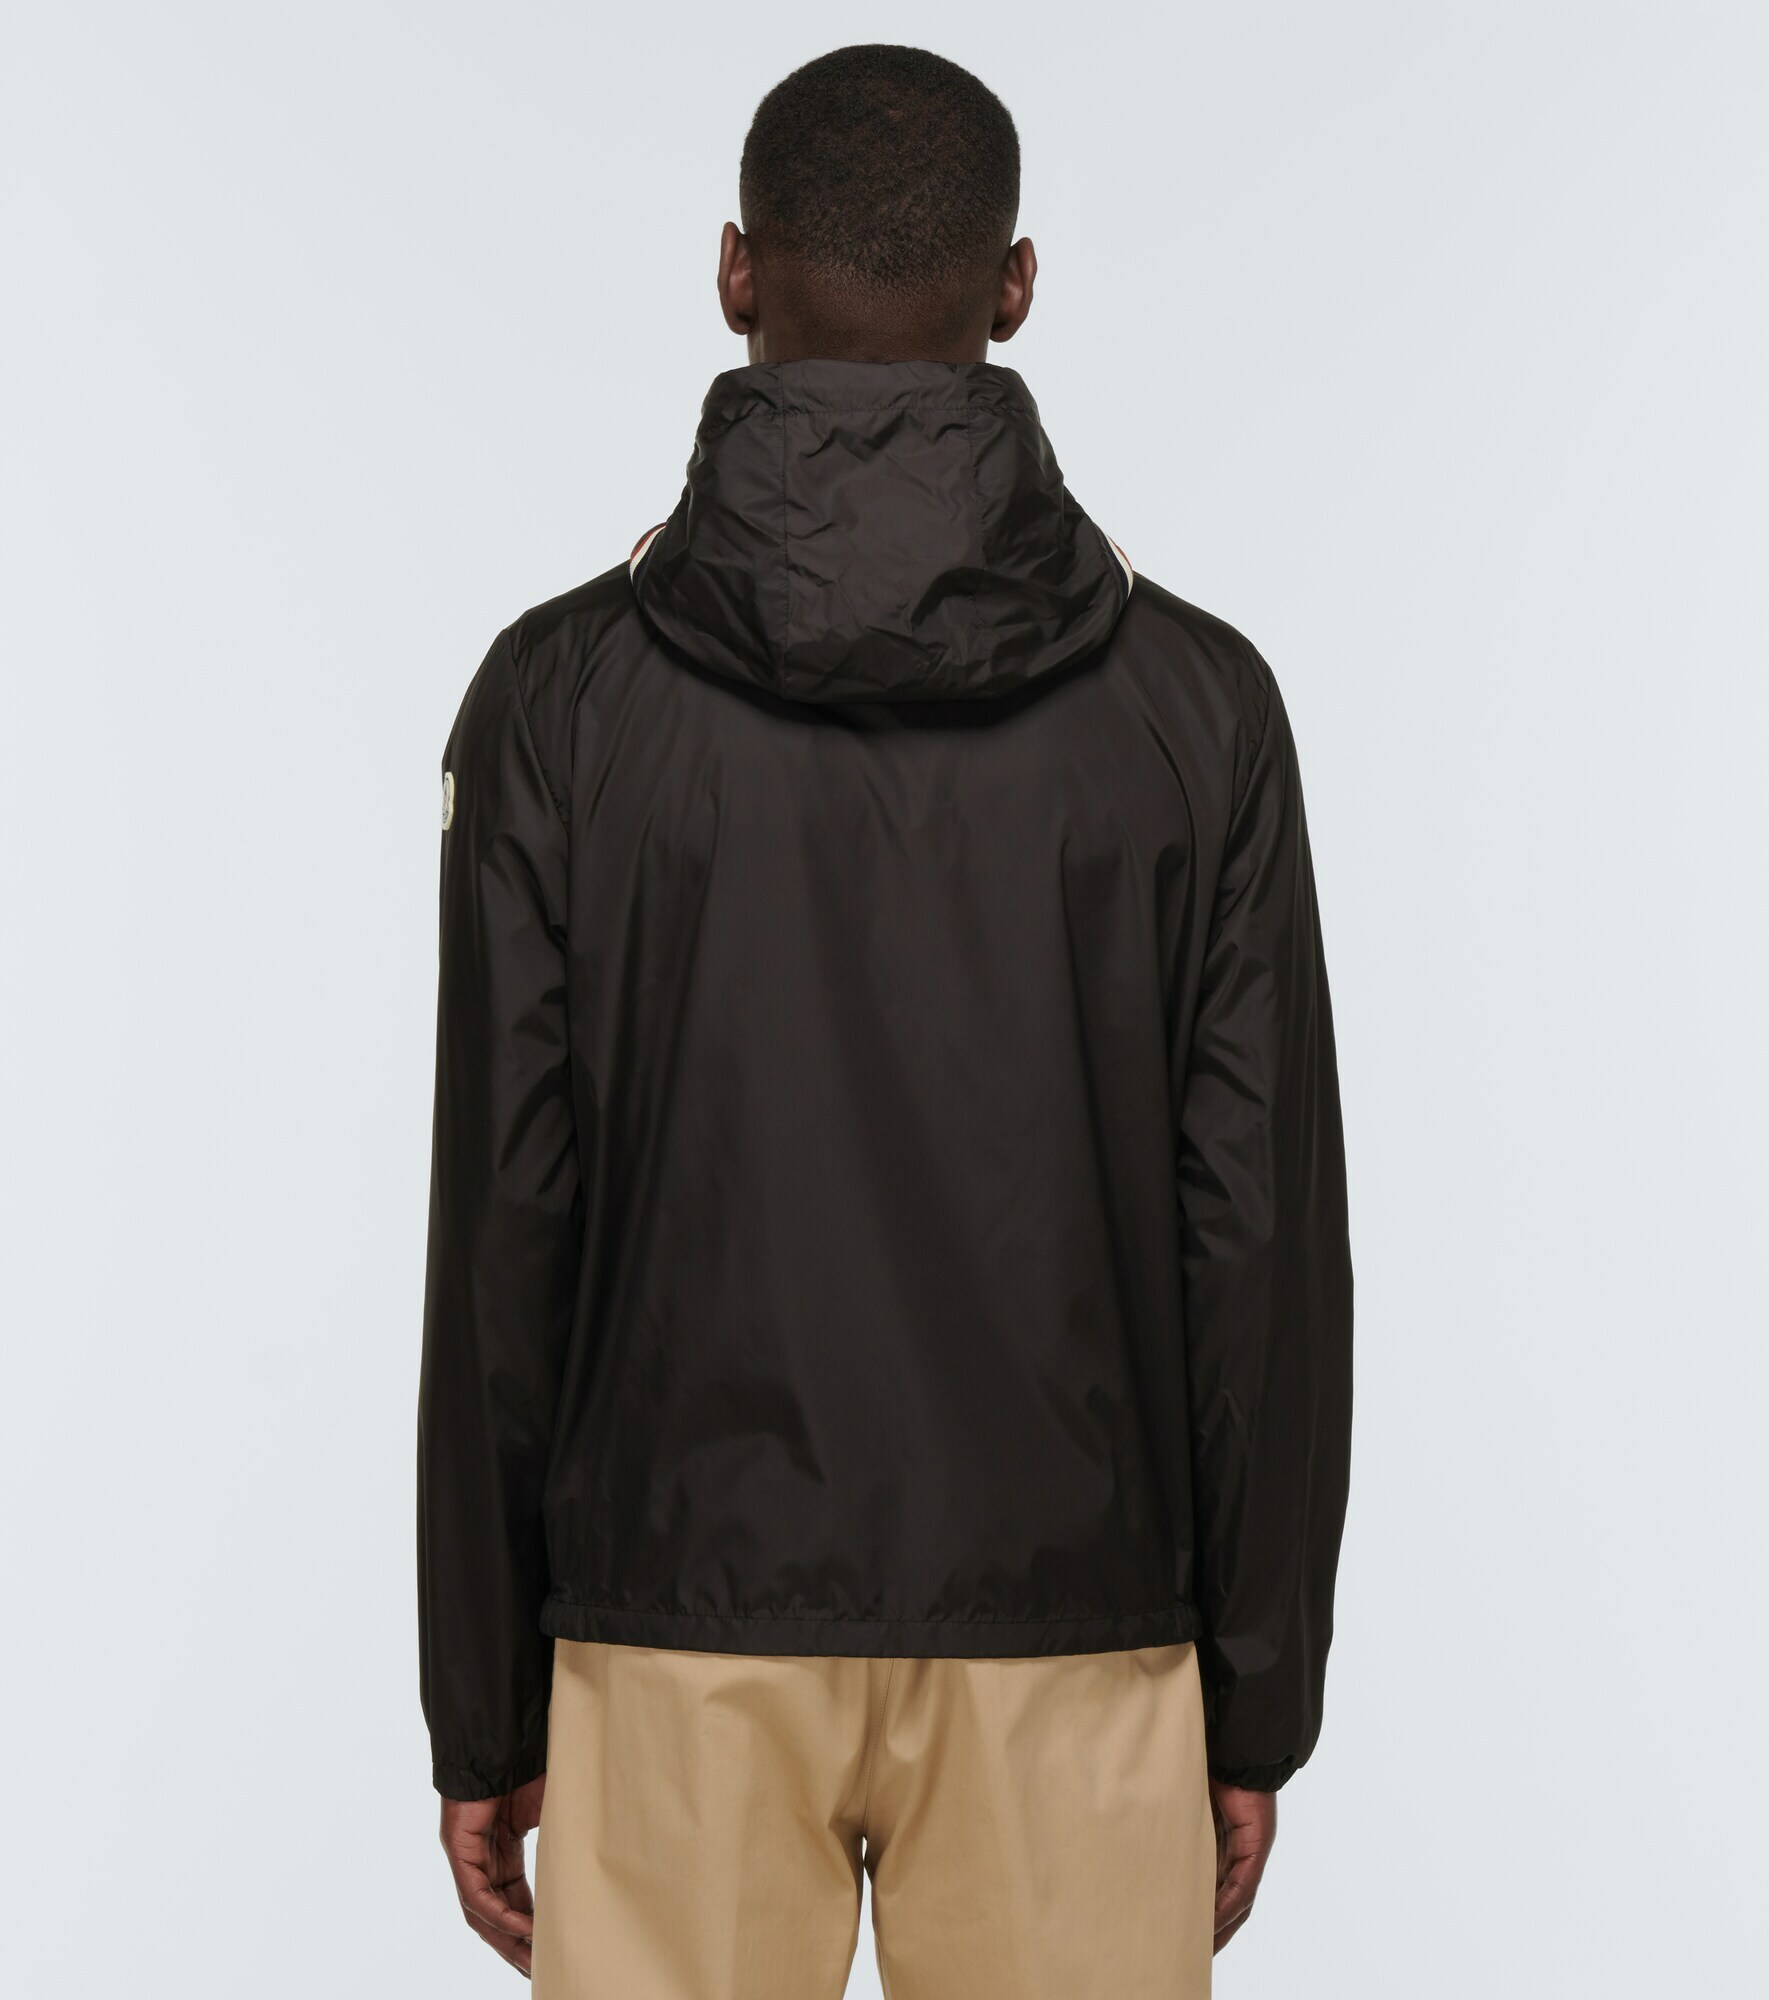 Moncler - Grimpeurs hooded jacket Moncler